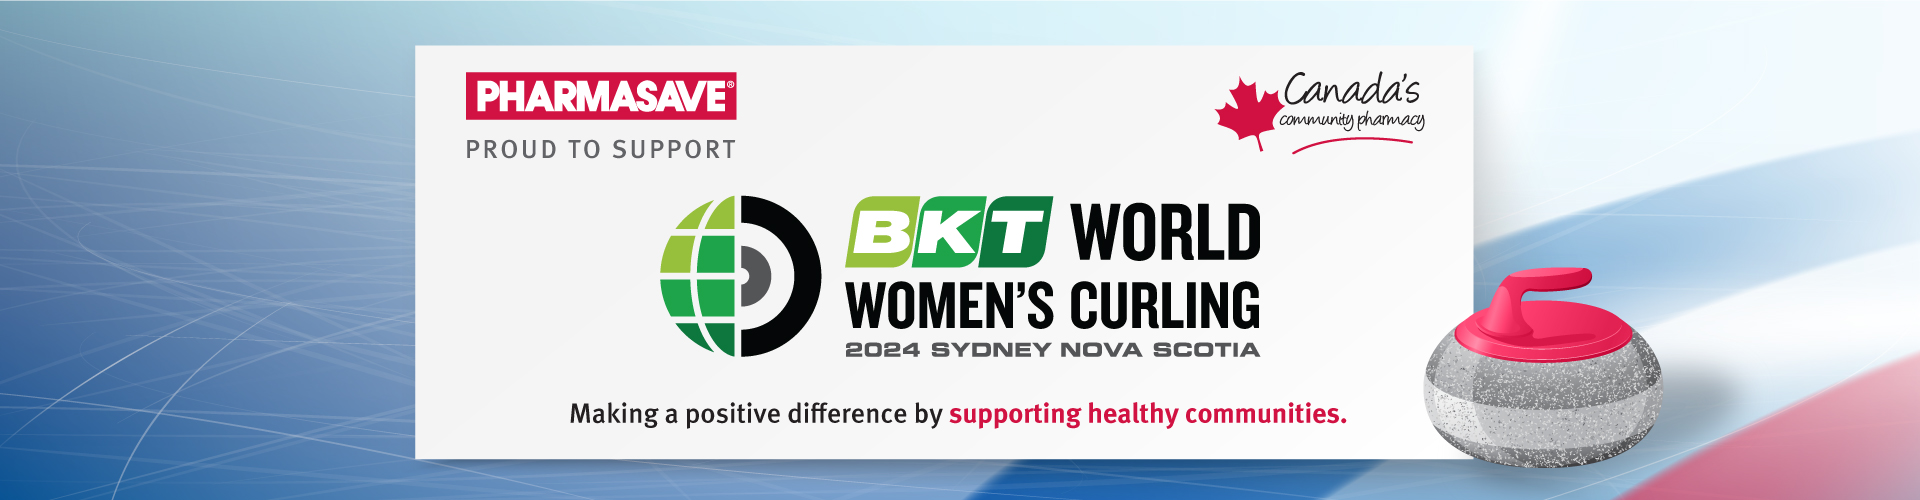 BKT World Women's Curling 2024